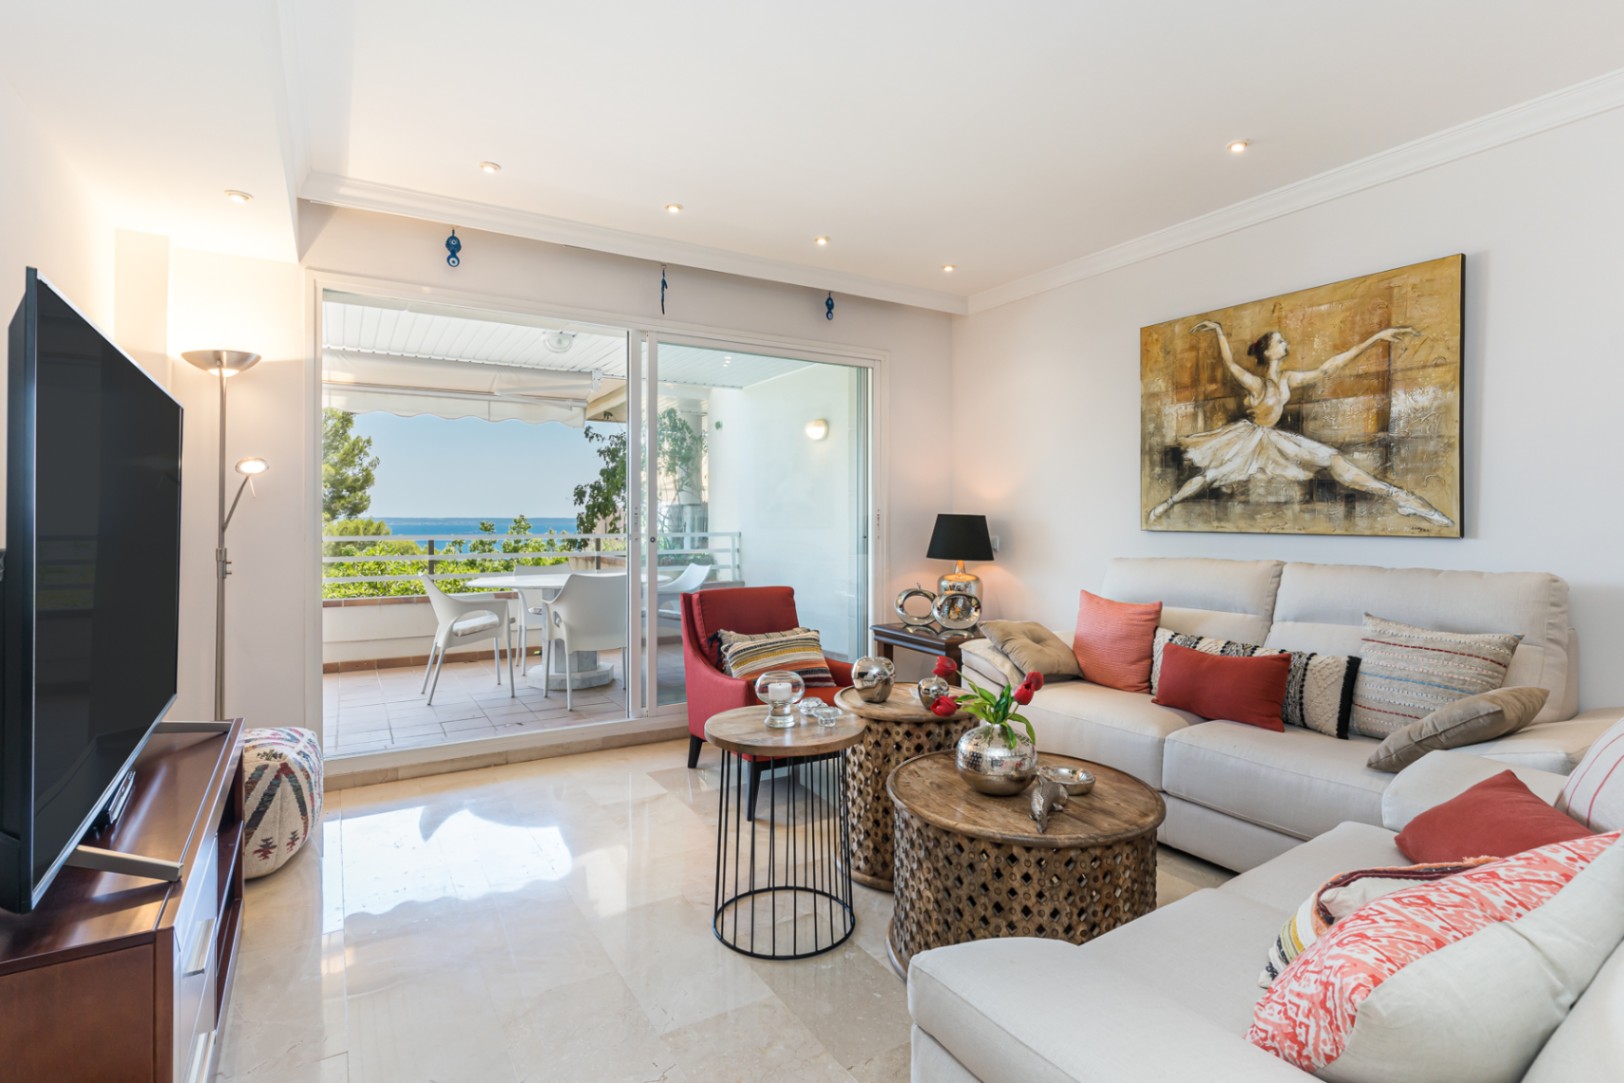 Sapcious appartement met zeezicht in een rustige omgeving van Cas Catala